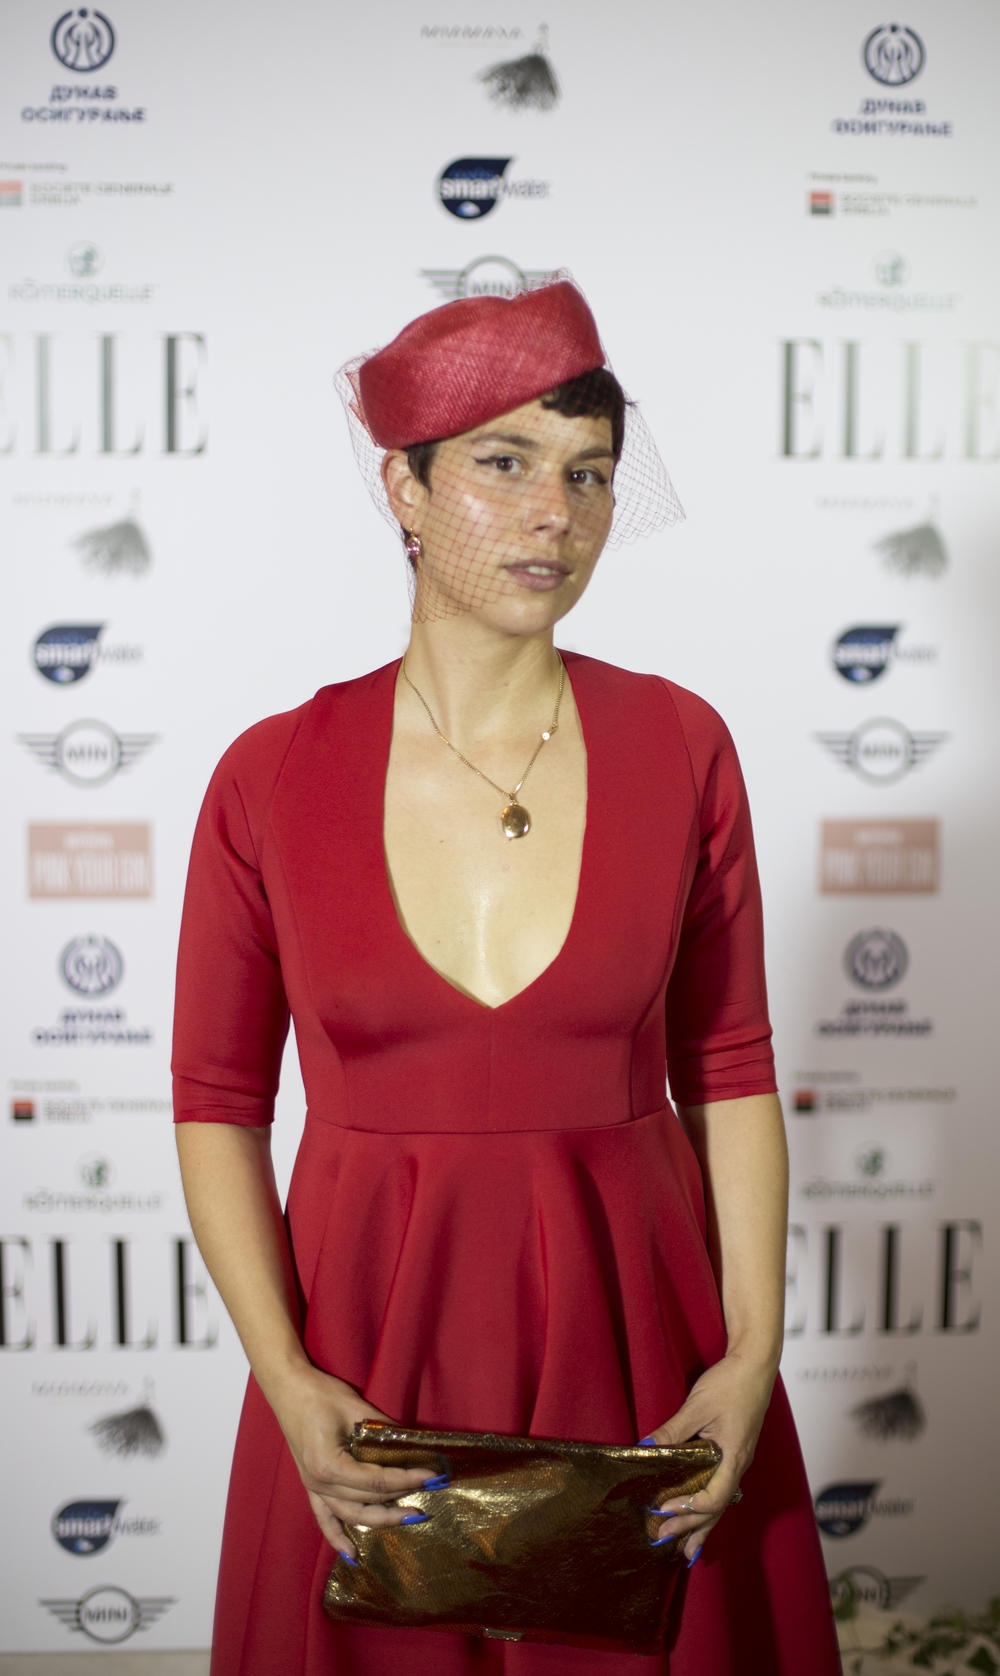 <p>Održan je peti Elle Fashion Dinner koji je okupio odabrane dame iz sveta mode, biznisa i kulture. Još jednom je poslata poruka - zajedno smo jače</p>